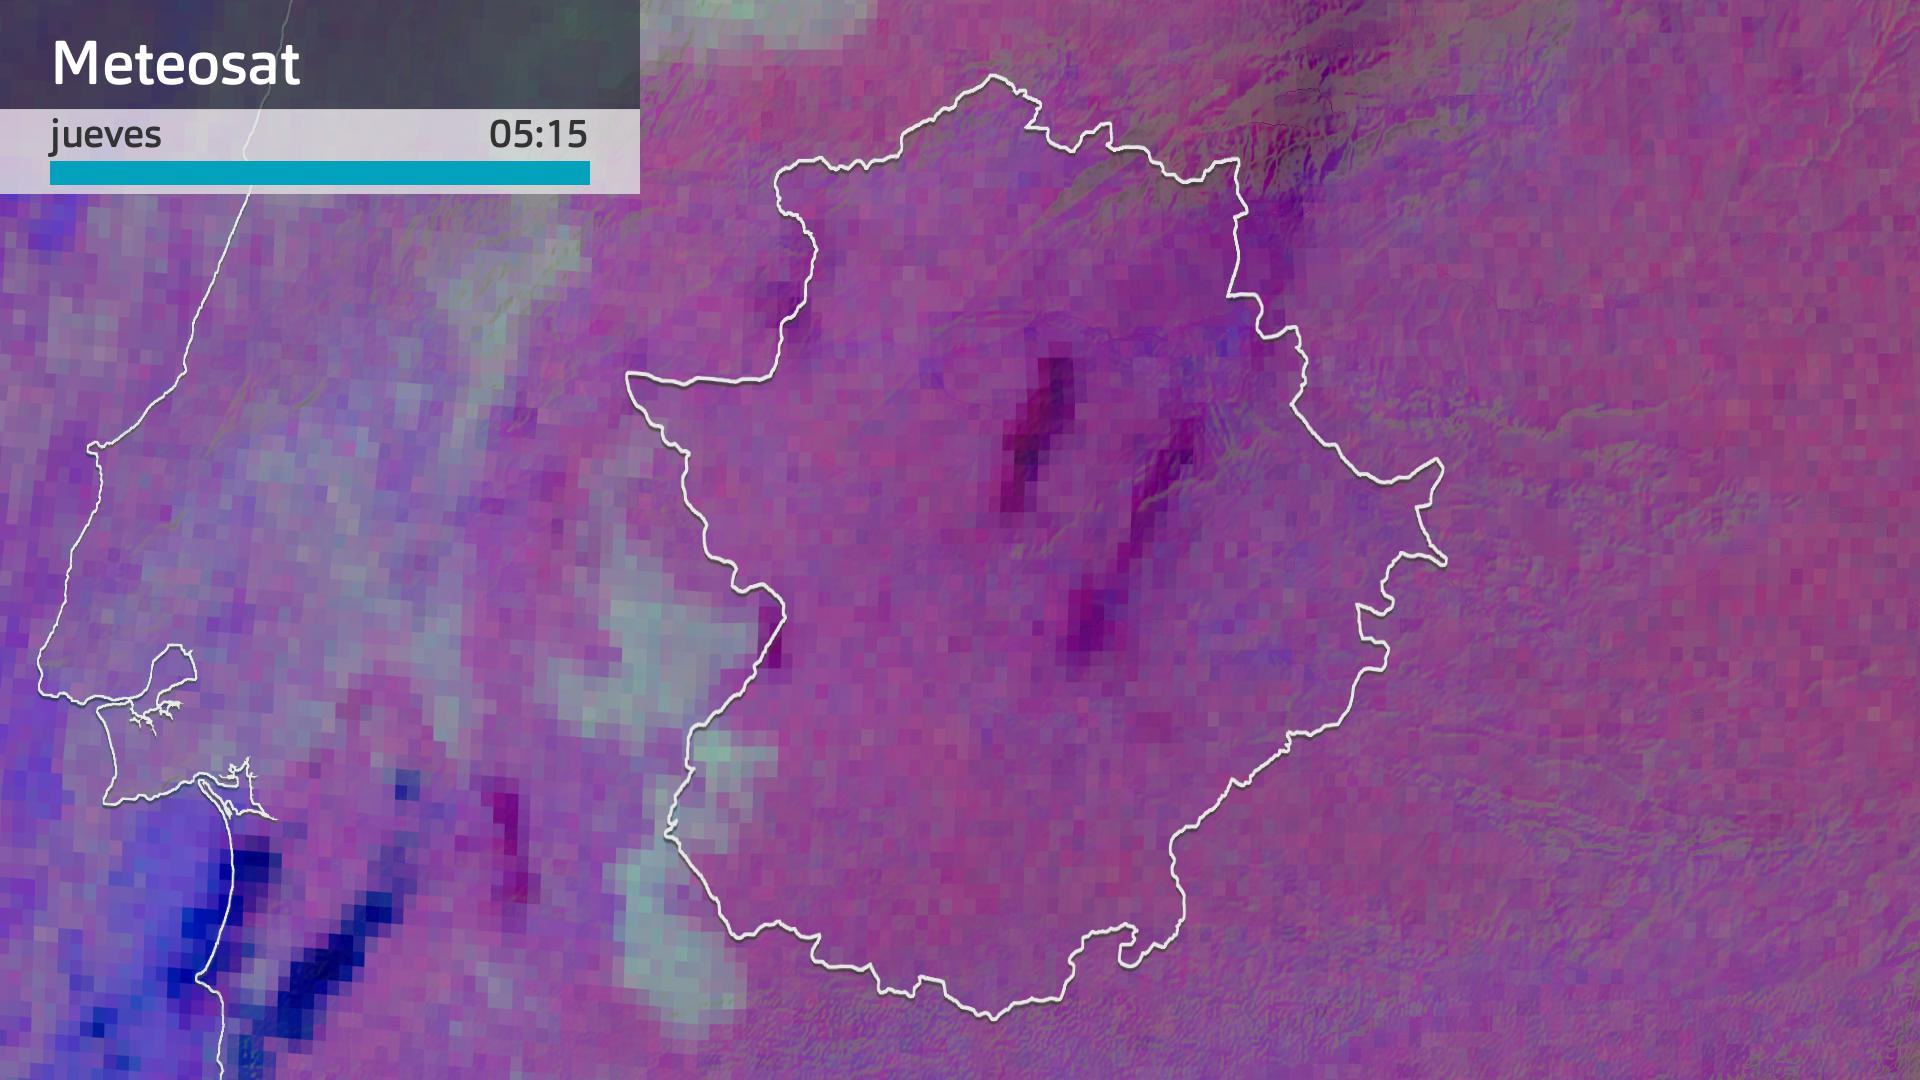 Imagen del Meteosat jueves 29 de febrero 5:15 h.